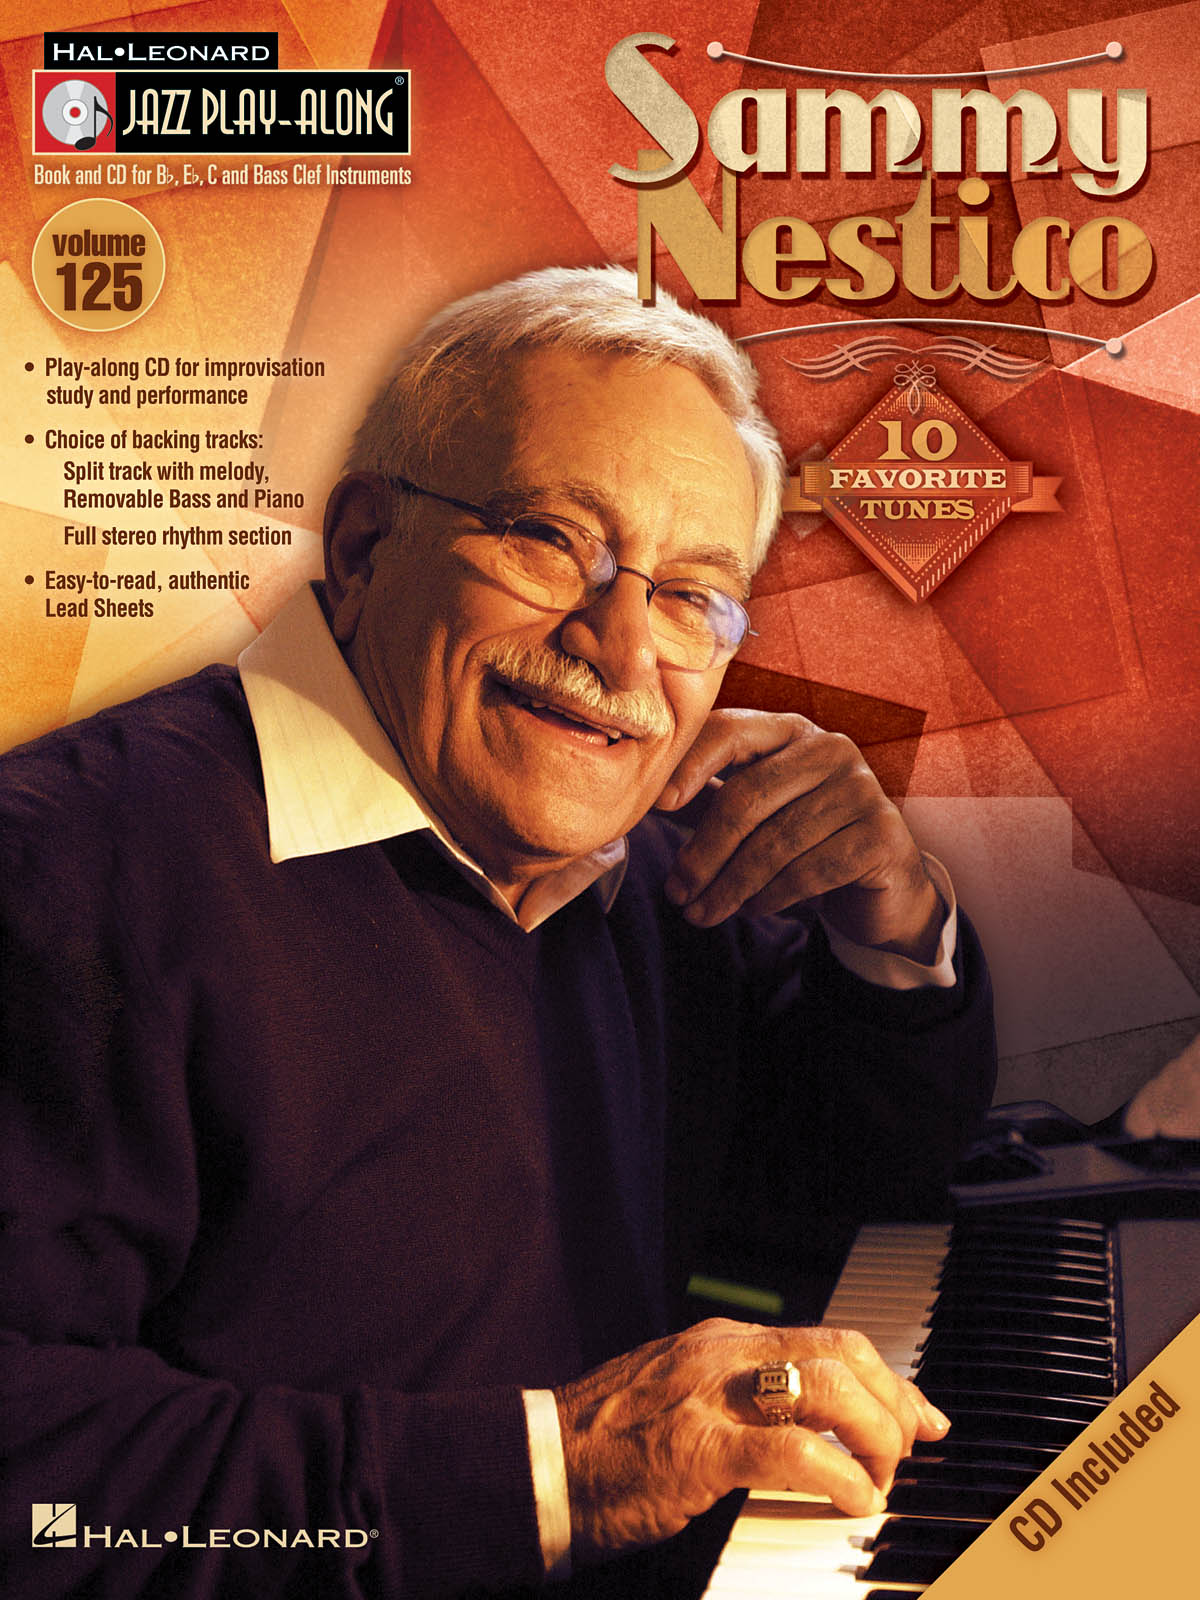 Sammy Nestico - Jazz Play-Along Volume 125 - melodie s akordy pro nástroje v ladění C